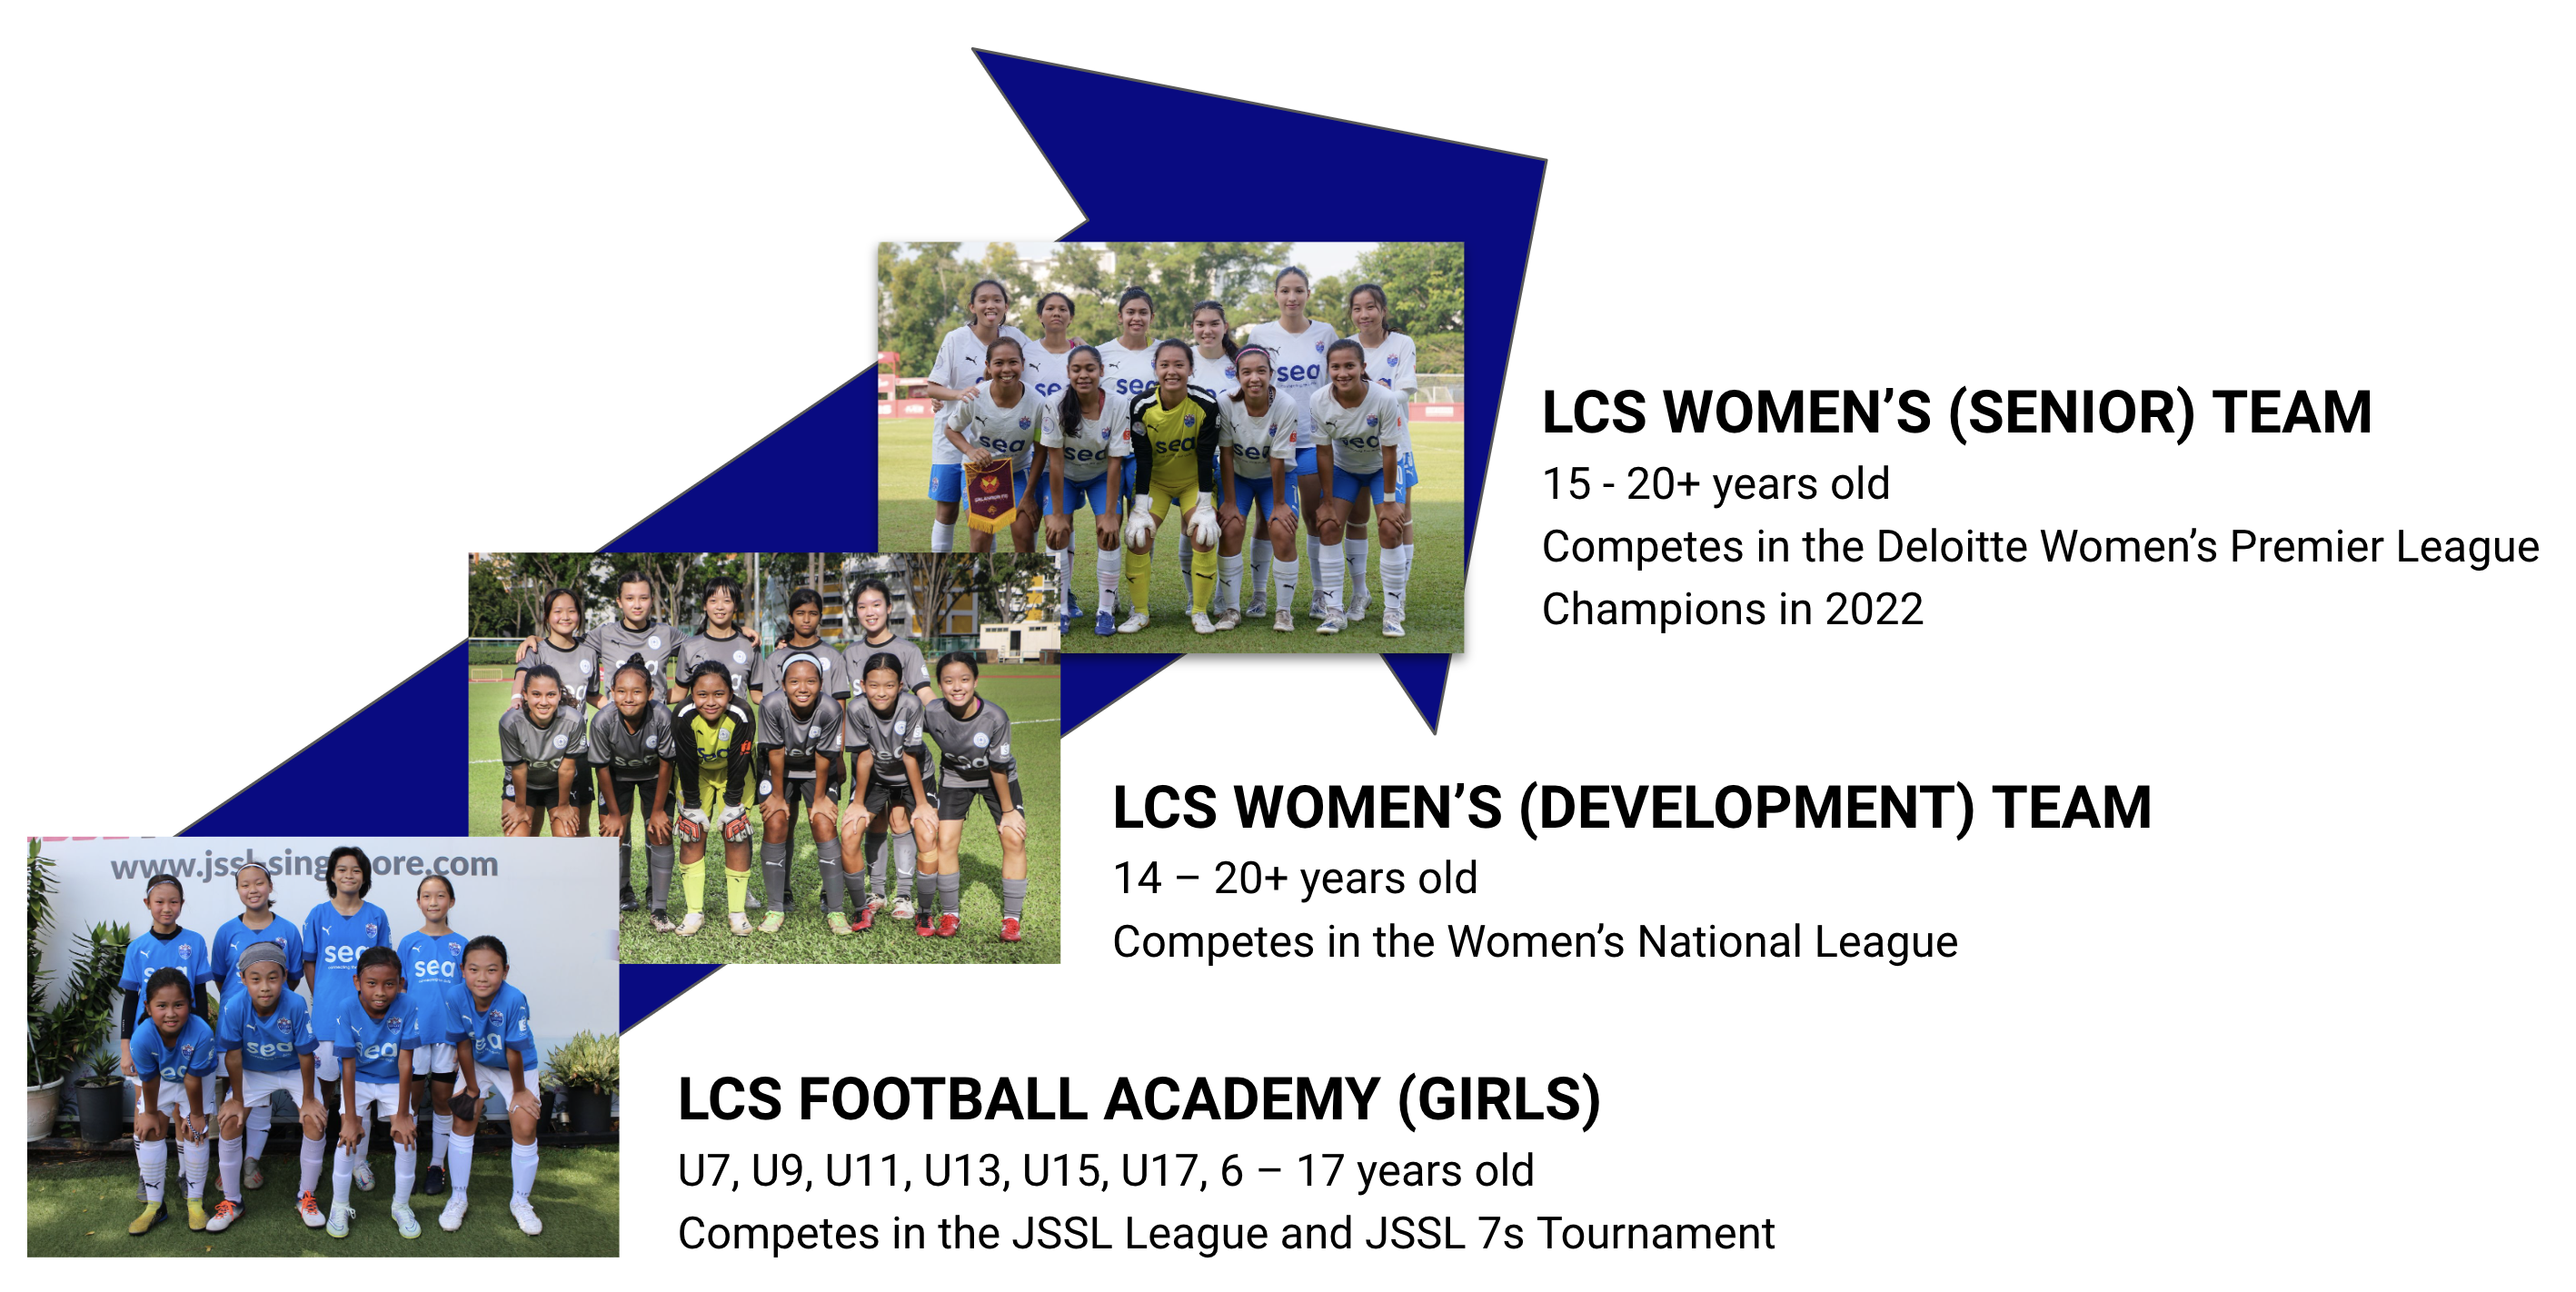 LCS Football Academy